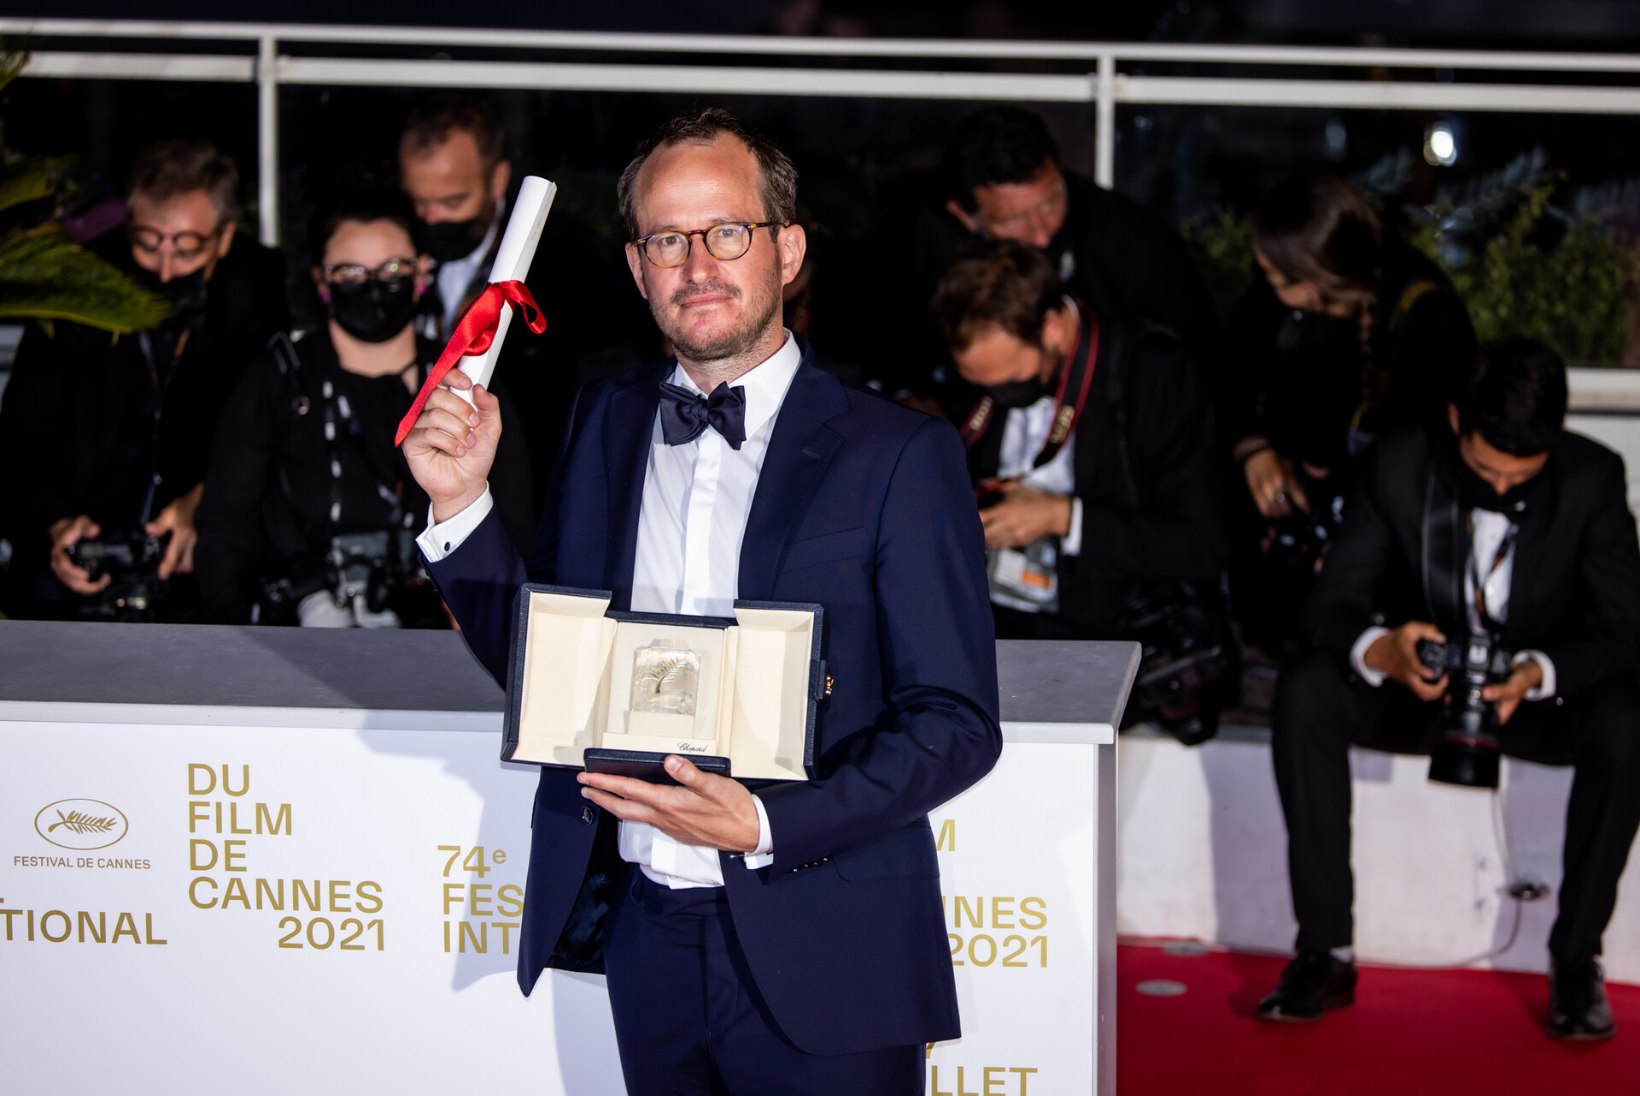 VAU-VAU-VAU! Eesti filmitegijate osalusel valminud „Kupee nr 6“ pärjati Cannes’is grand prix’ga! Produtsent: juhtus midagi enneolematut!